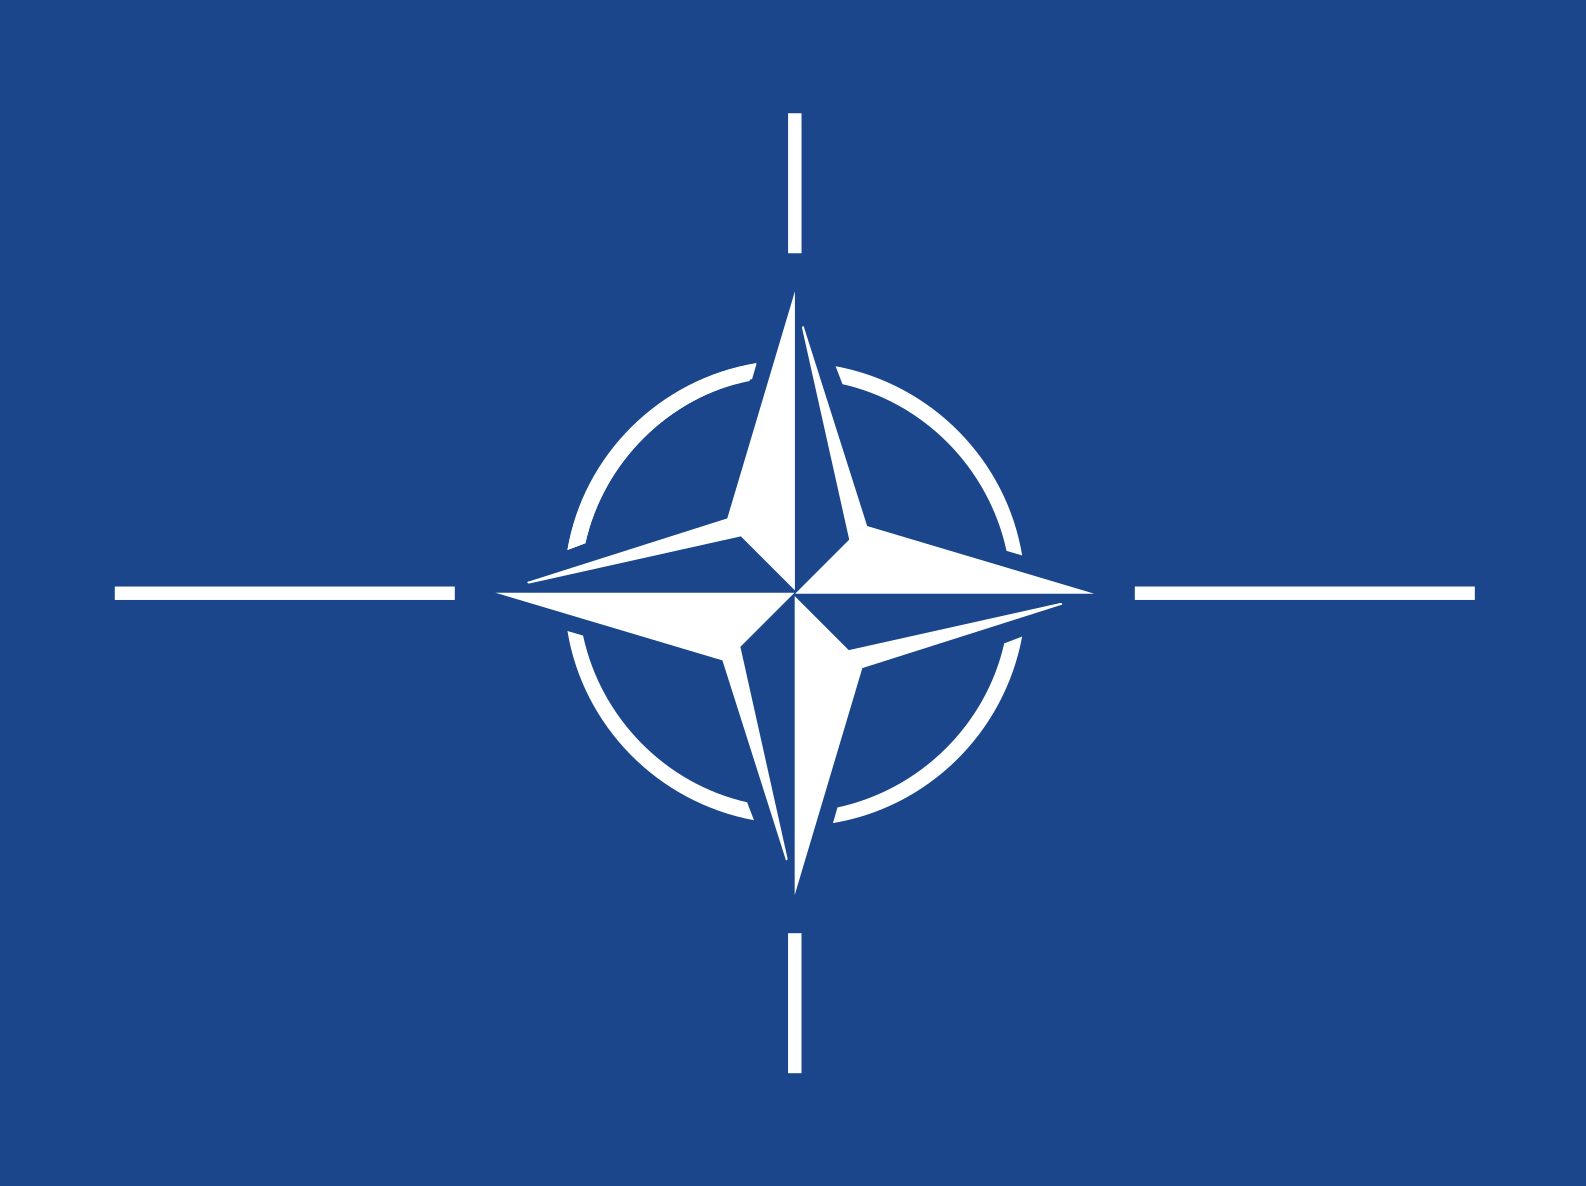 Ryssland banade väg för Nato